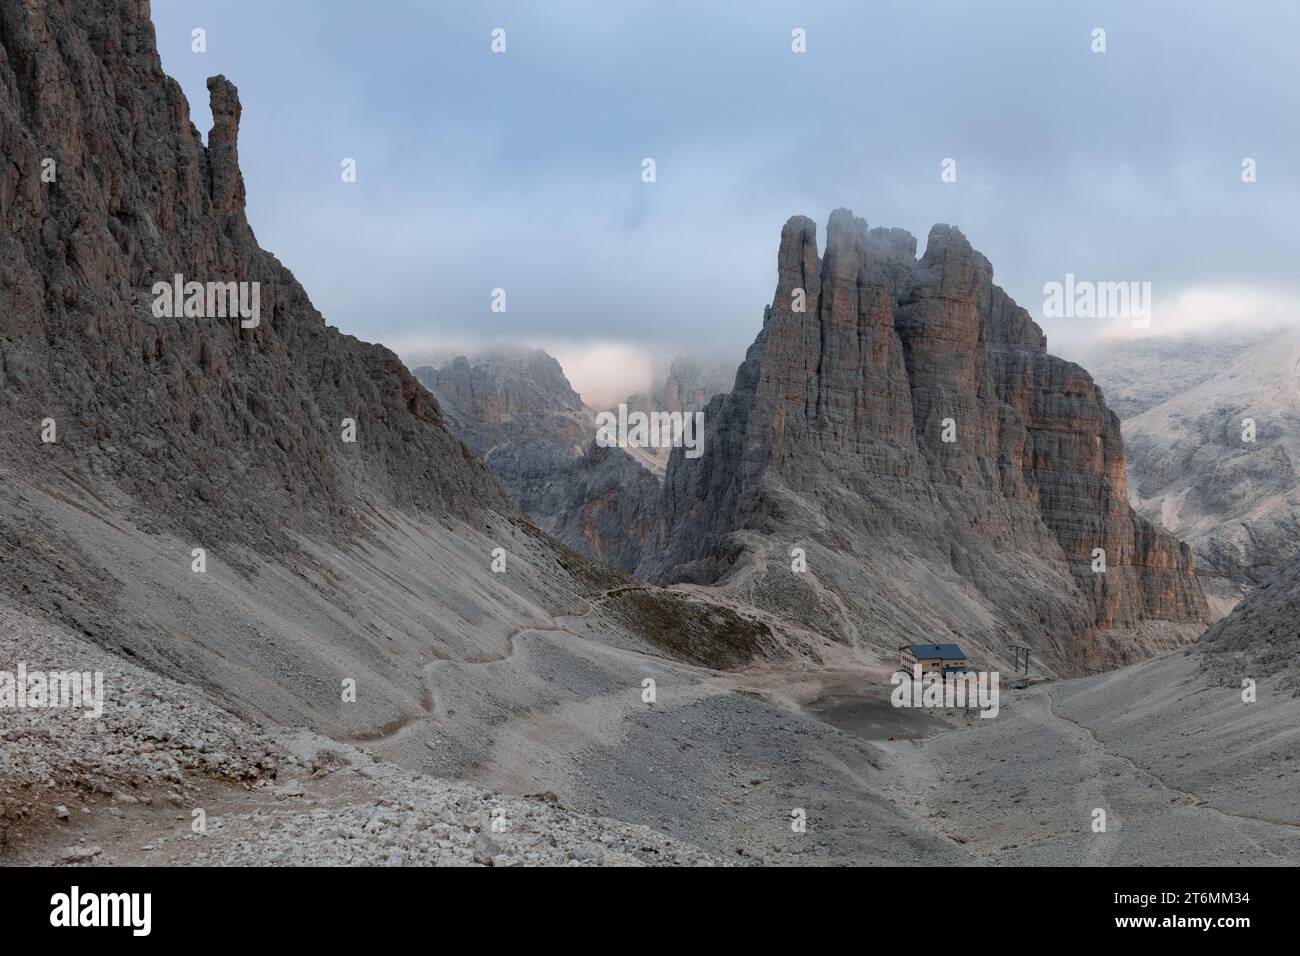 Vista delle torri del vajolet (torri del Vajolet) e del rifugio Re Alberto i dal passo di Santner, Dolomiti, Italia Foto Stock